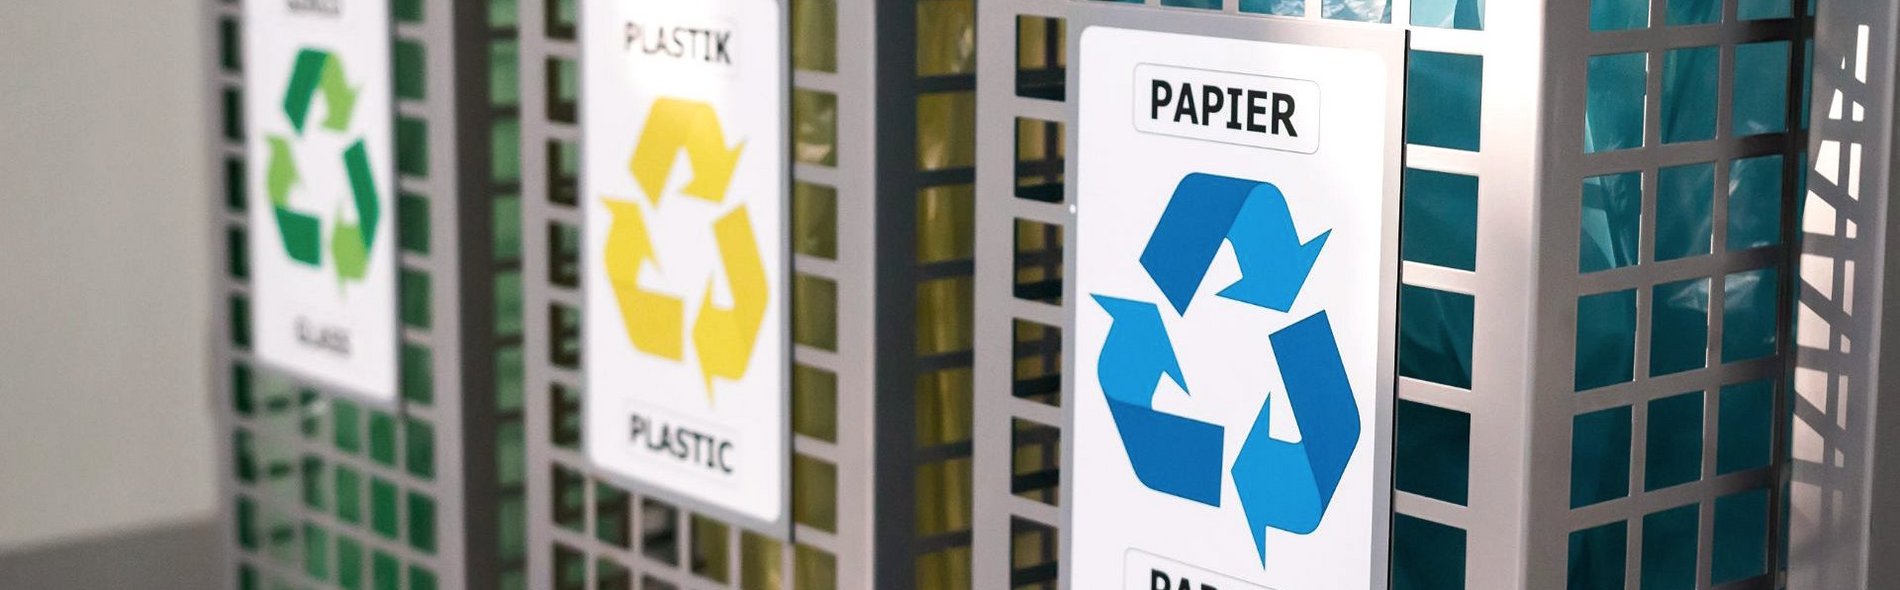 Foto von drei Abfallbehältern. Die Beschriftung der Behälter in den Farben blau, gelb und grün zeigt jeweils ein Recycling-Symbol. 